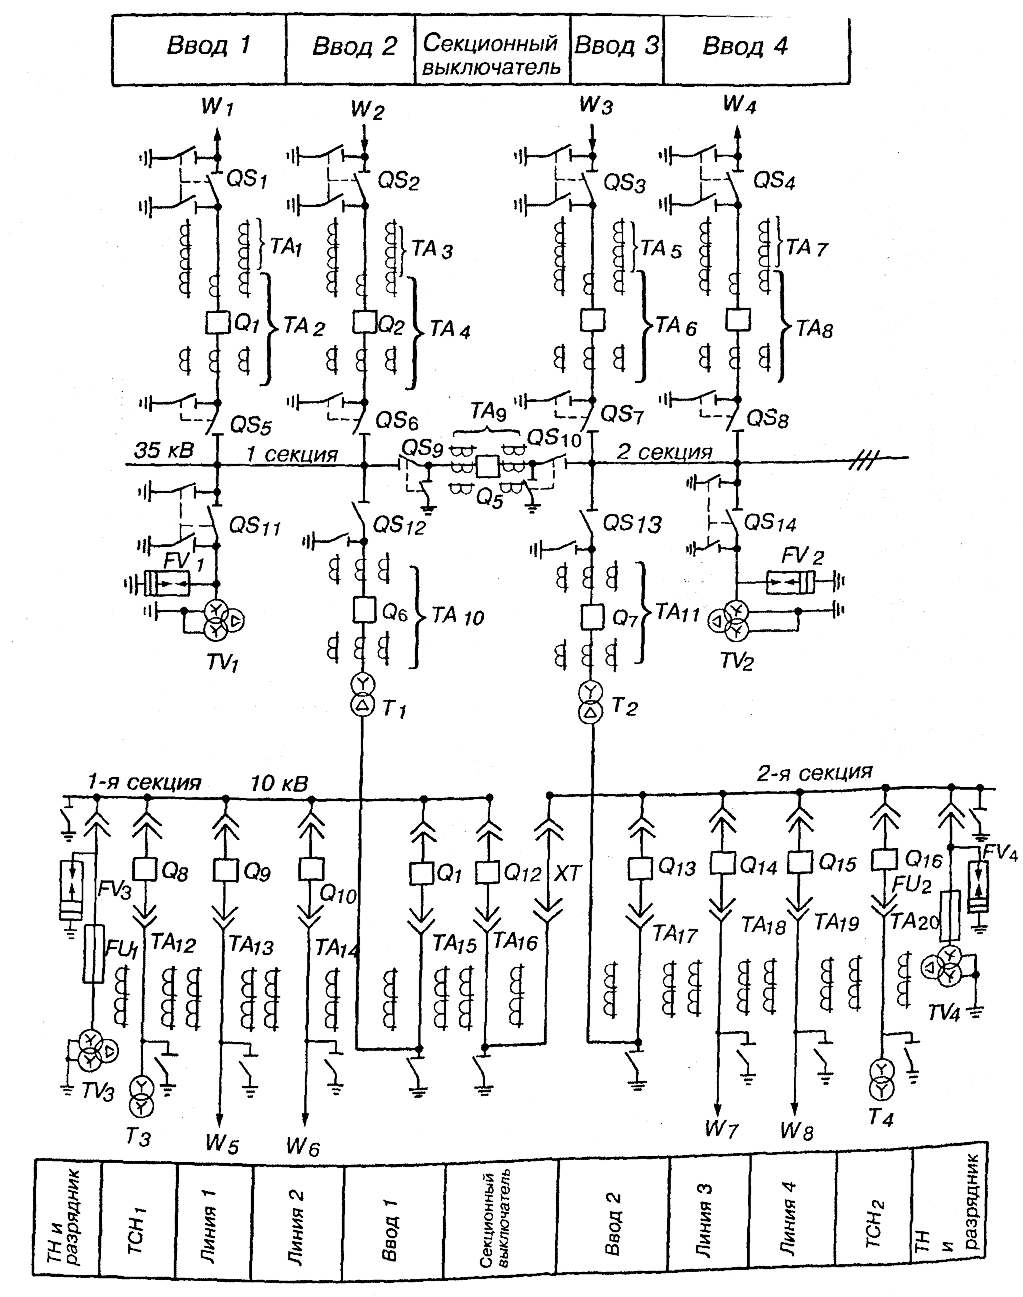 Схема двухтрансформаторной подстанции с первичным напряжением 35 кВ